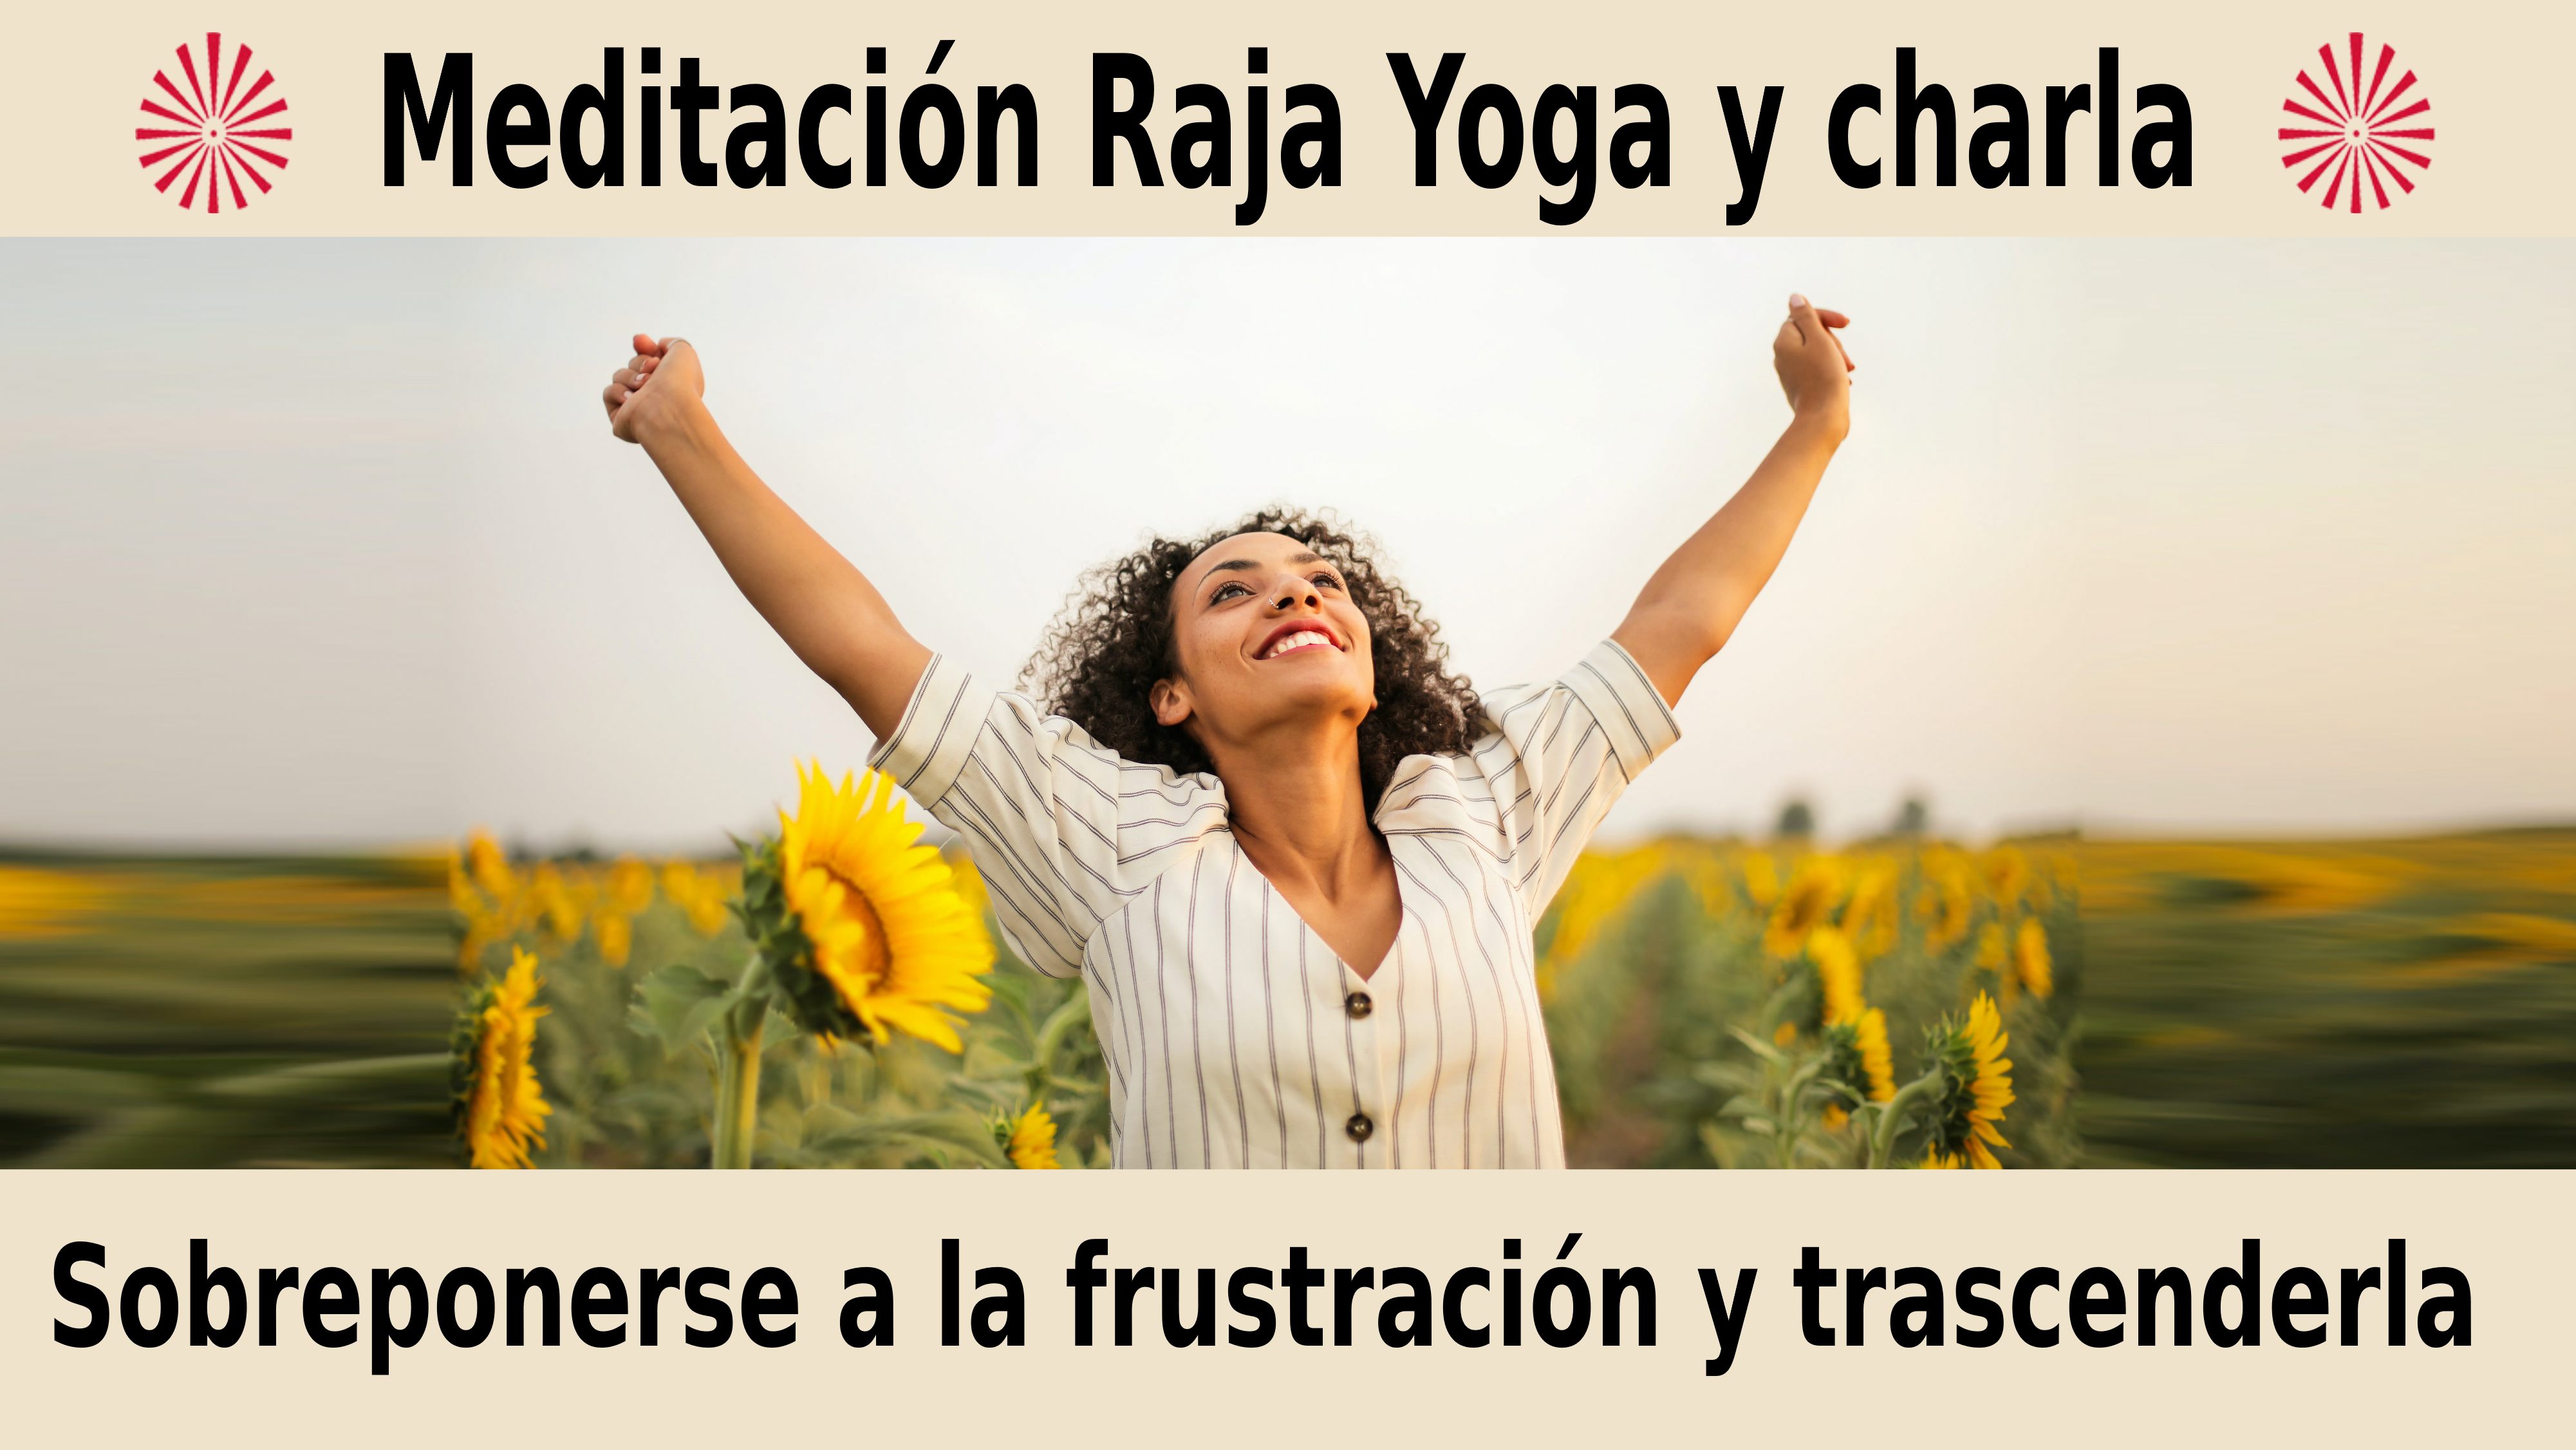 Meditación Raja Yoga y charla: Sobreponerse a la frustración y trascenderla (12 Diciembre 2020) On-line desde Valencia